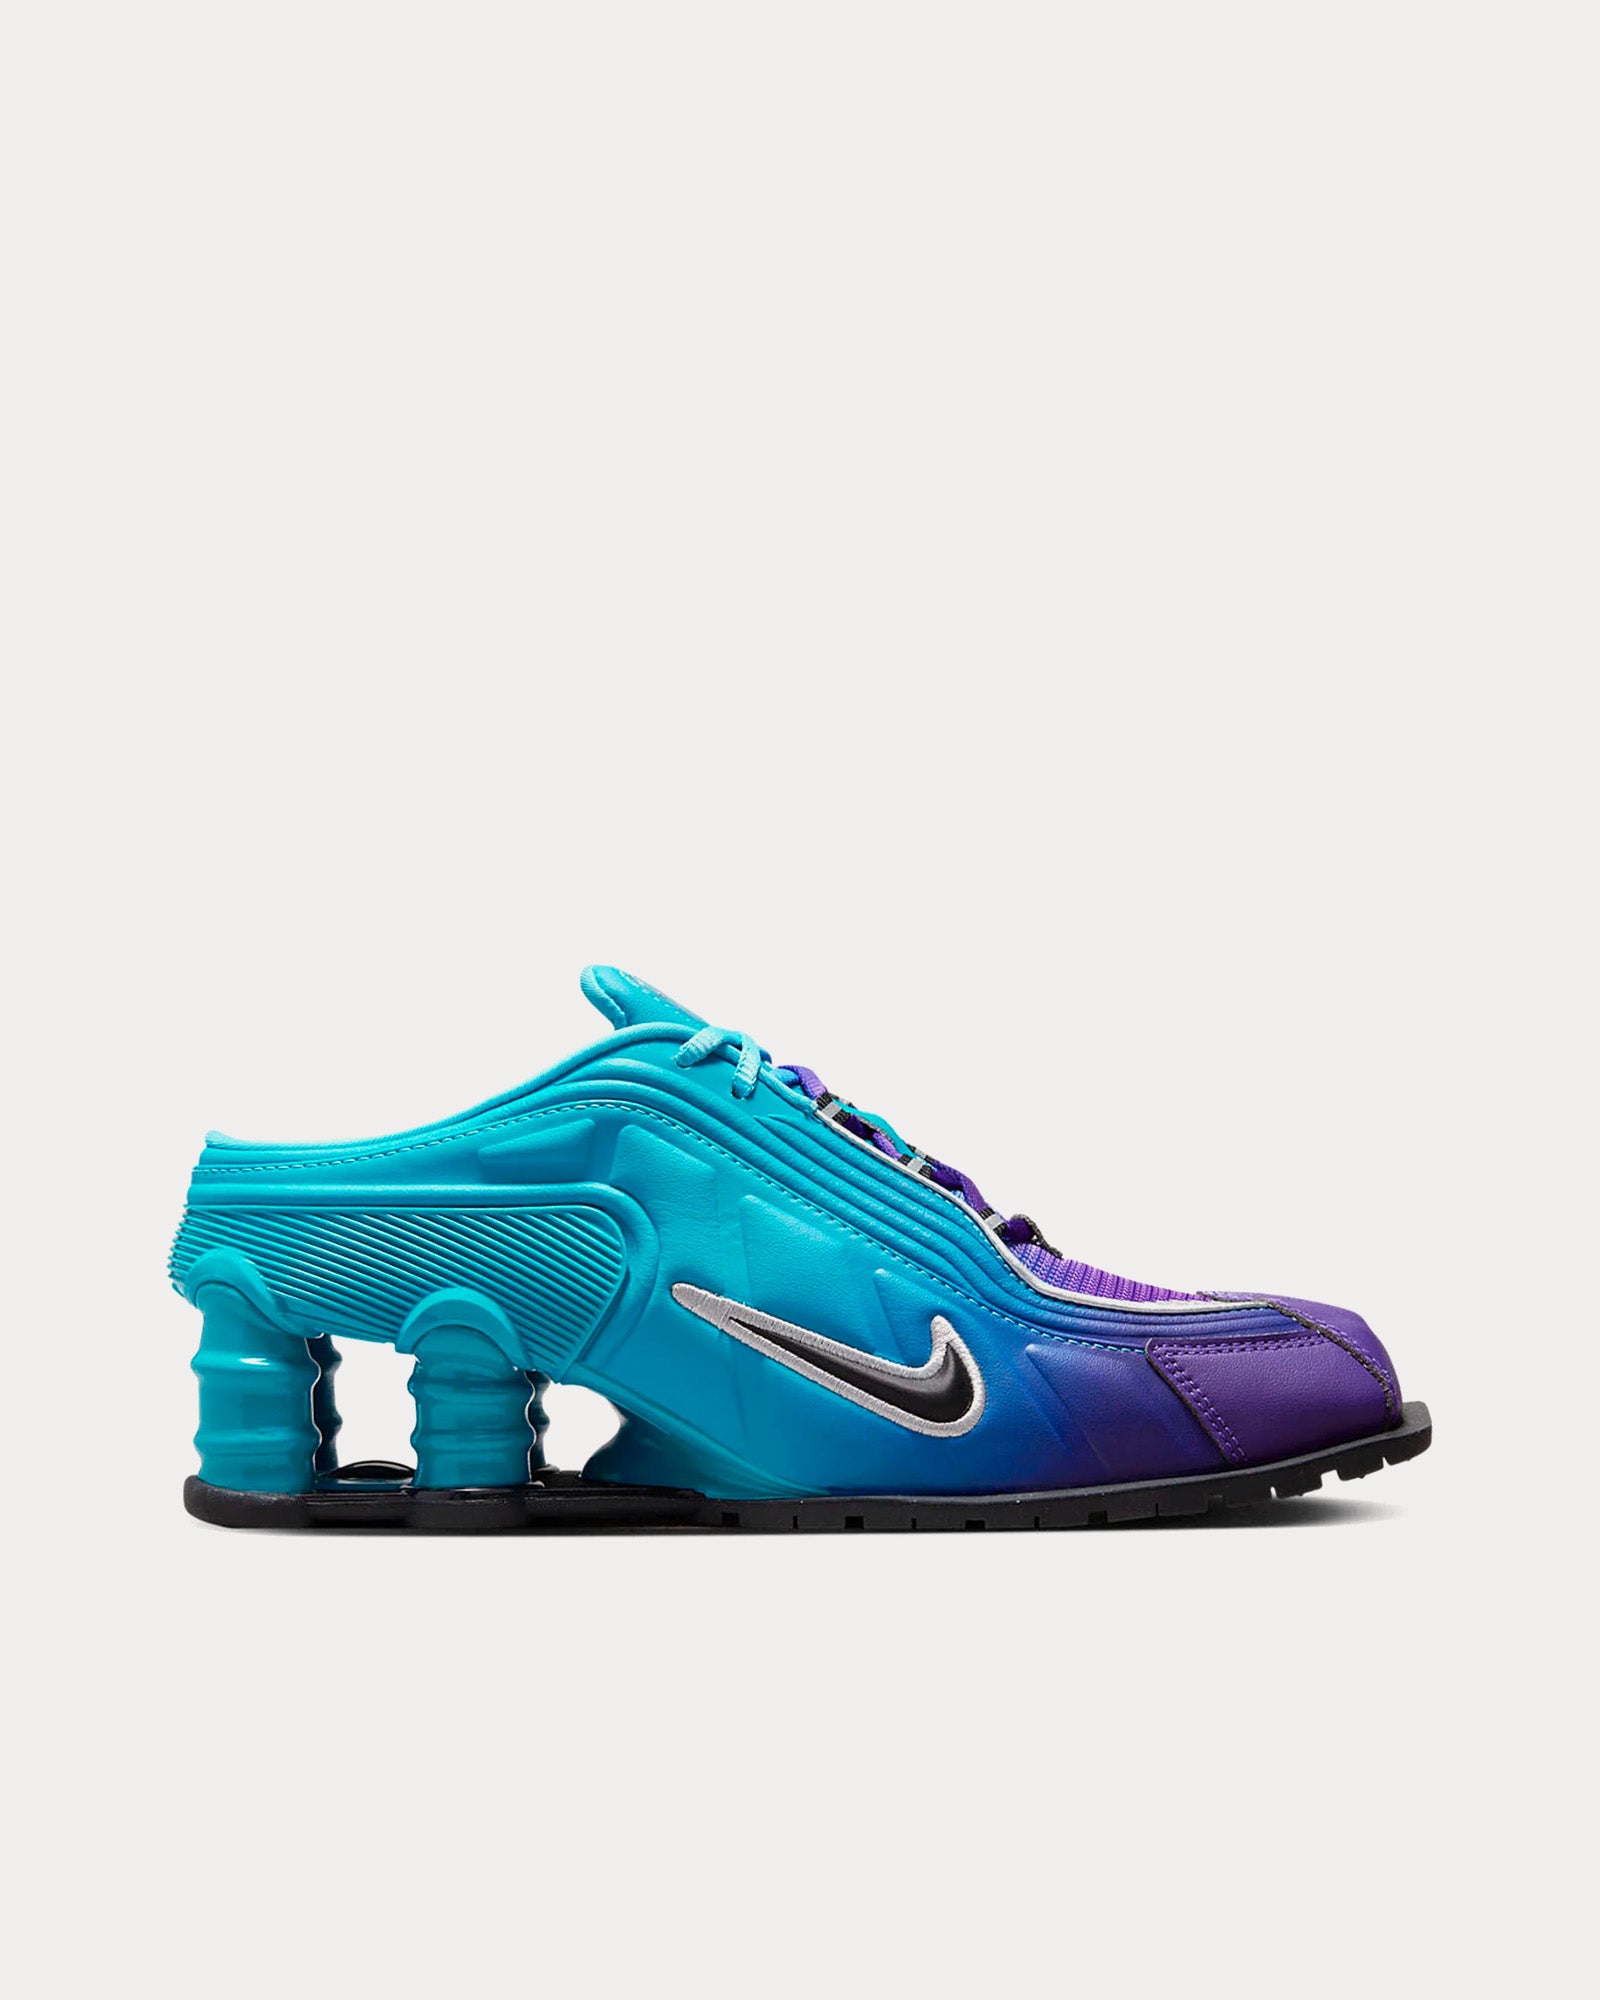 Shox MR4 Scuba Blue Low Top Sneakers